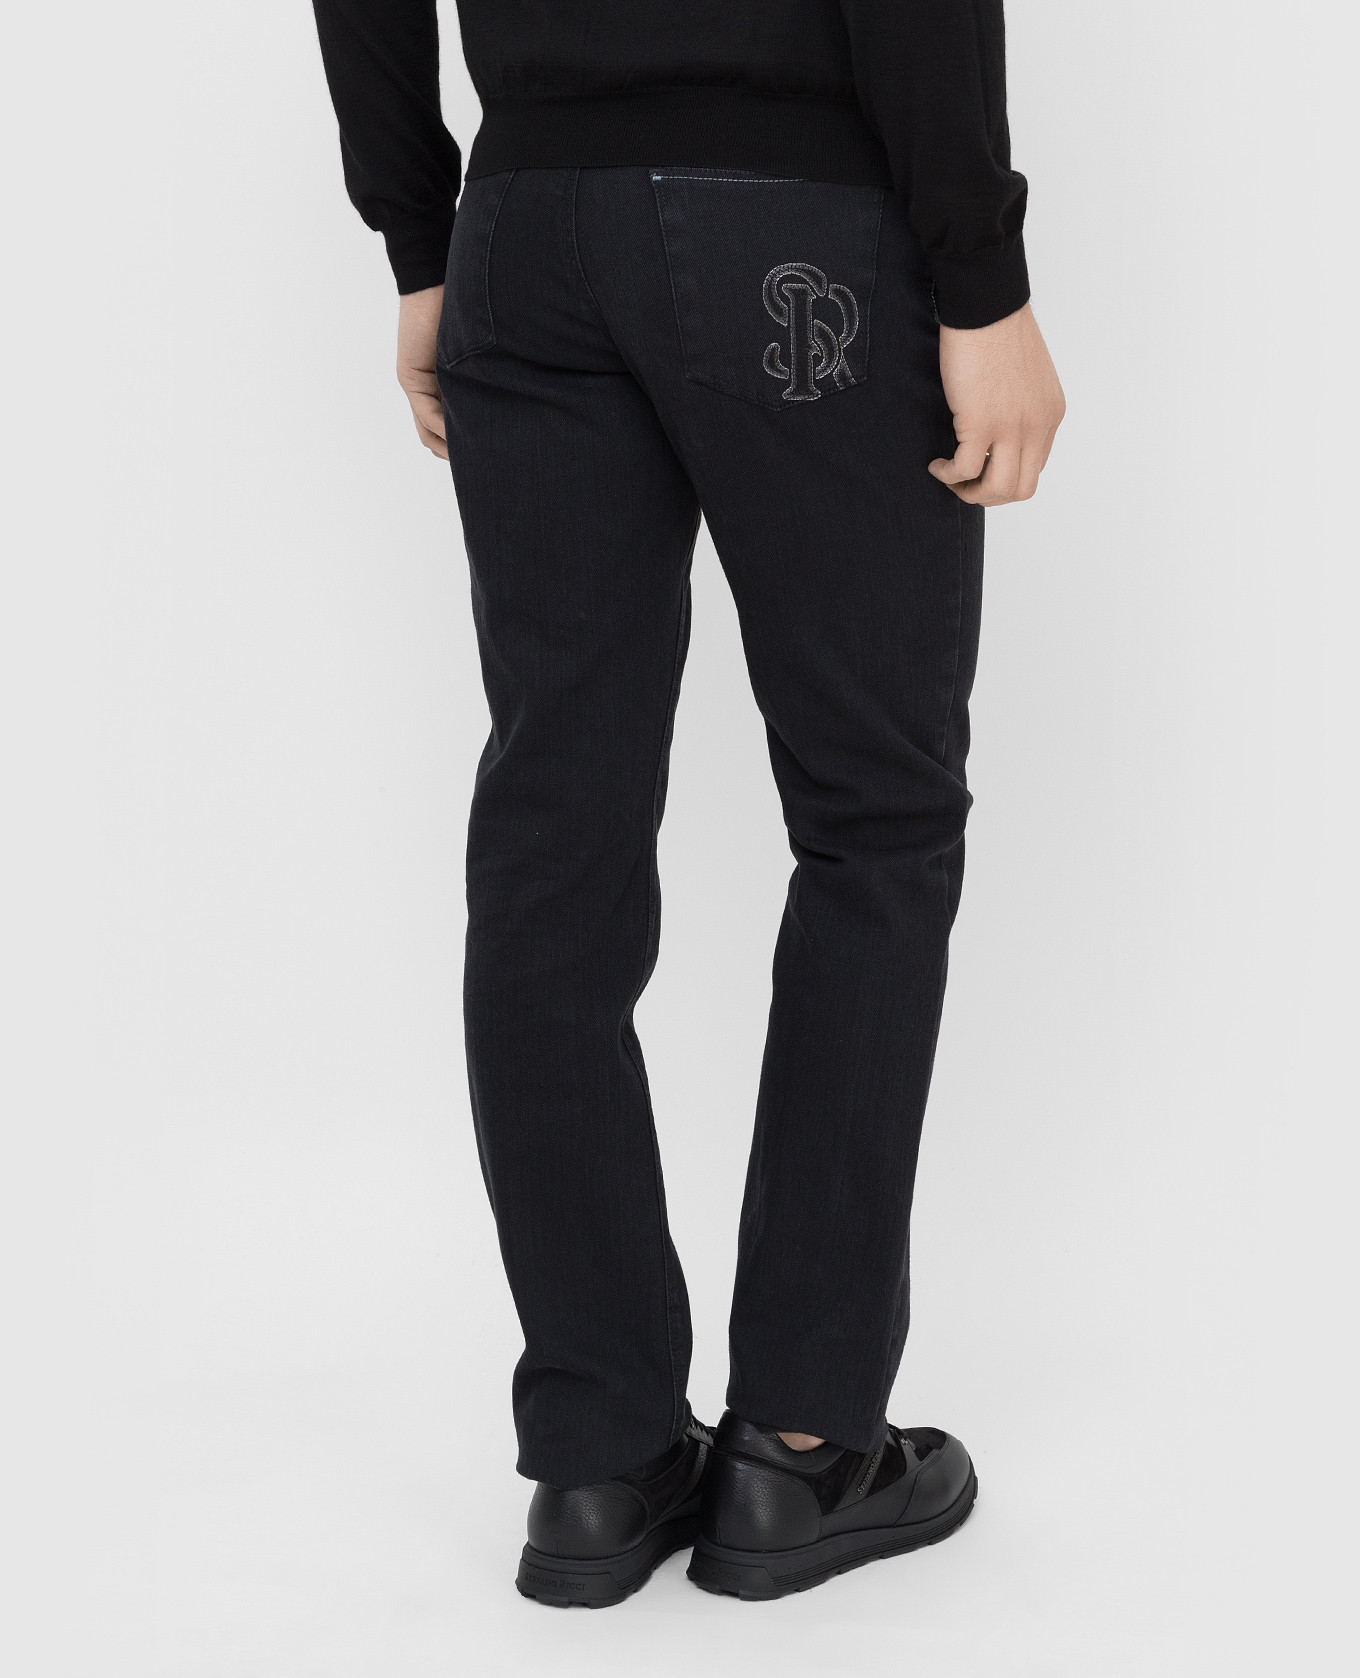 Stefano Ricci Темно-серые джинсы с вышивкой монограммы M8T1402080T1803 изображение 4